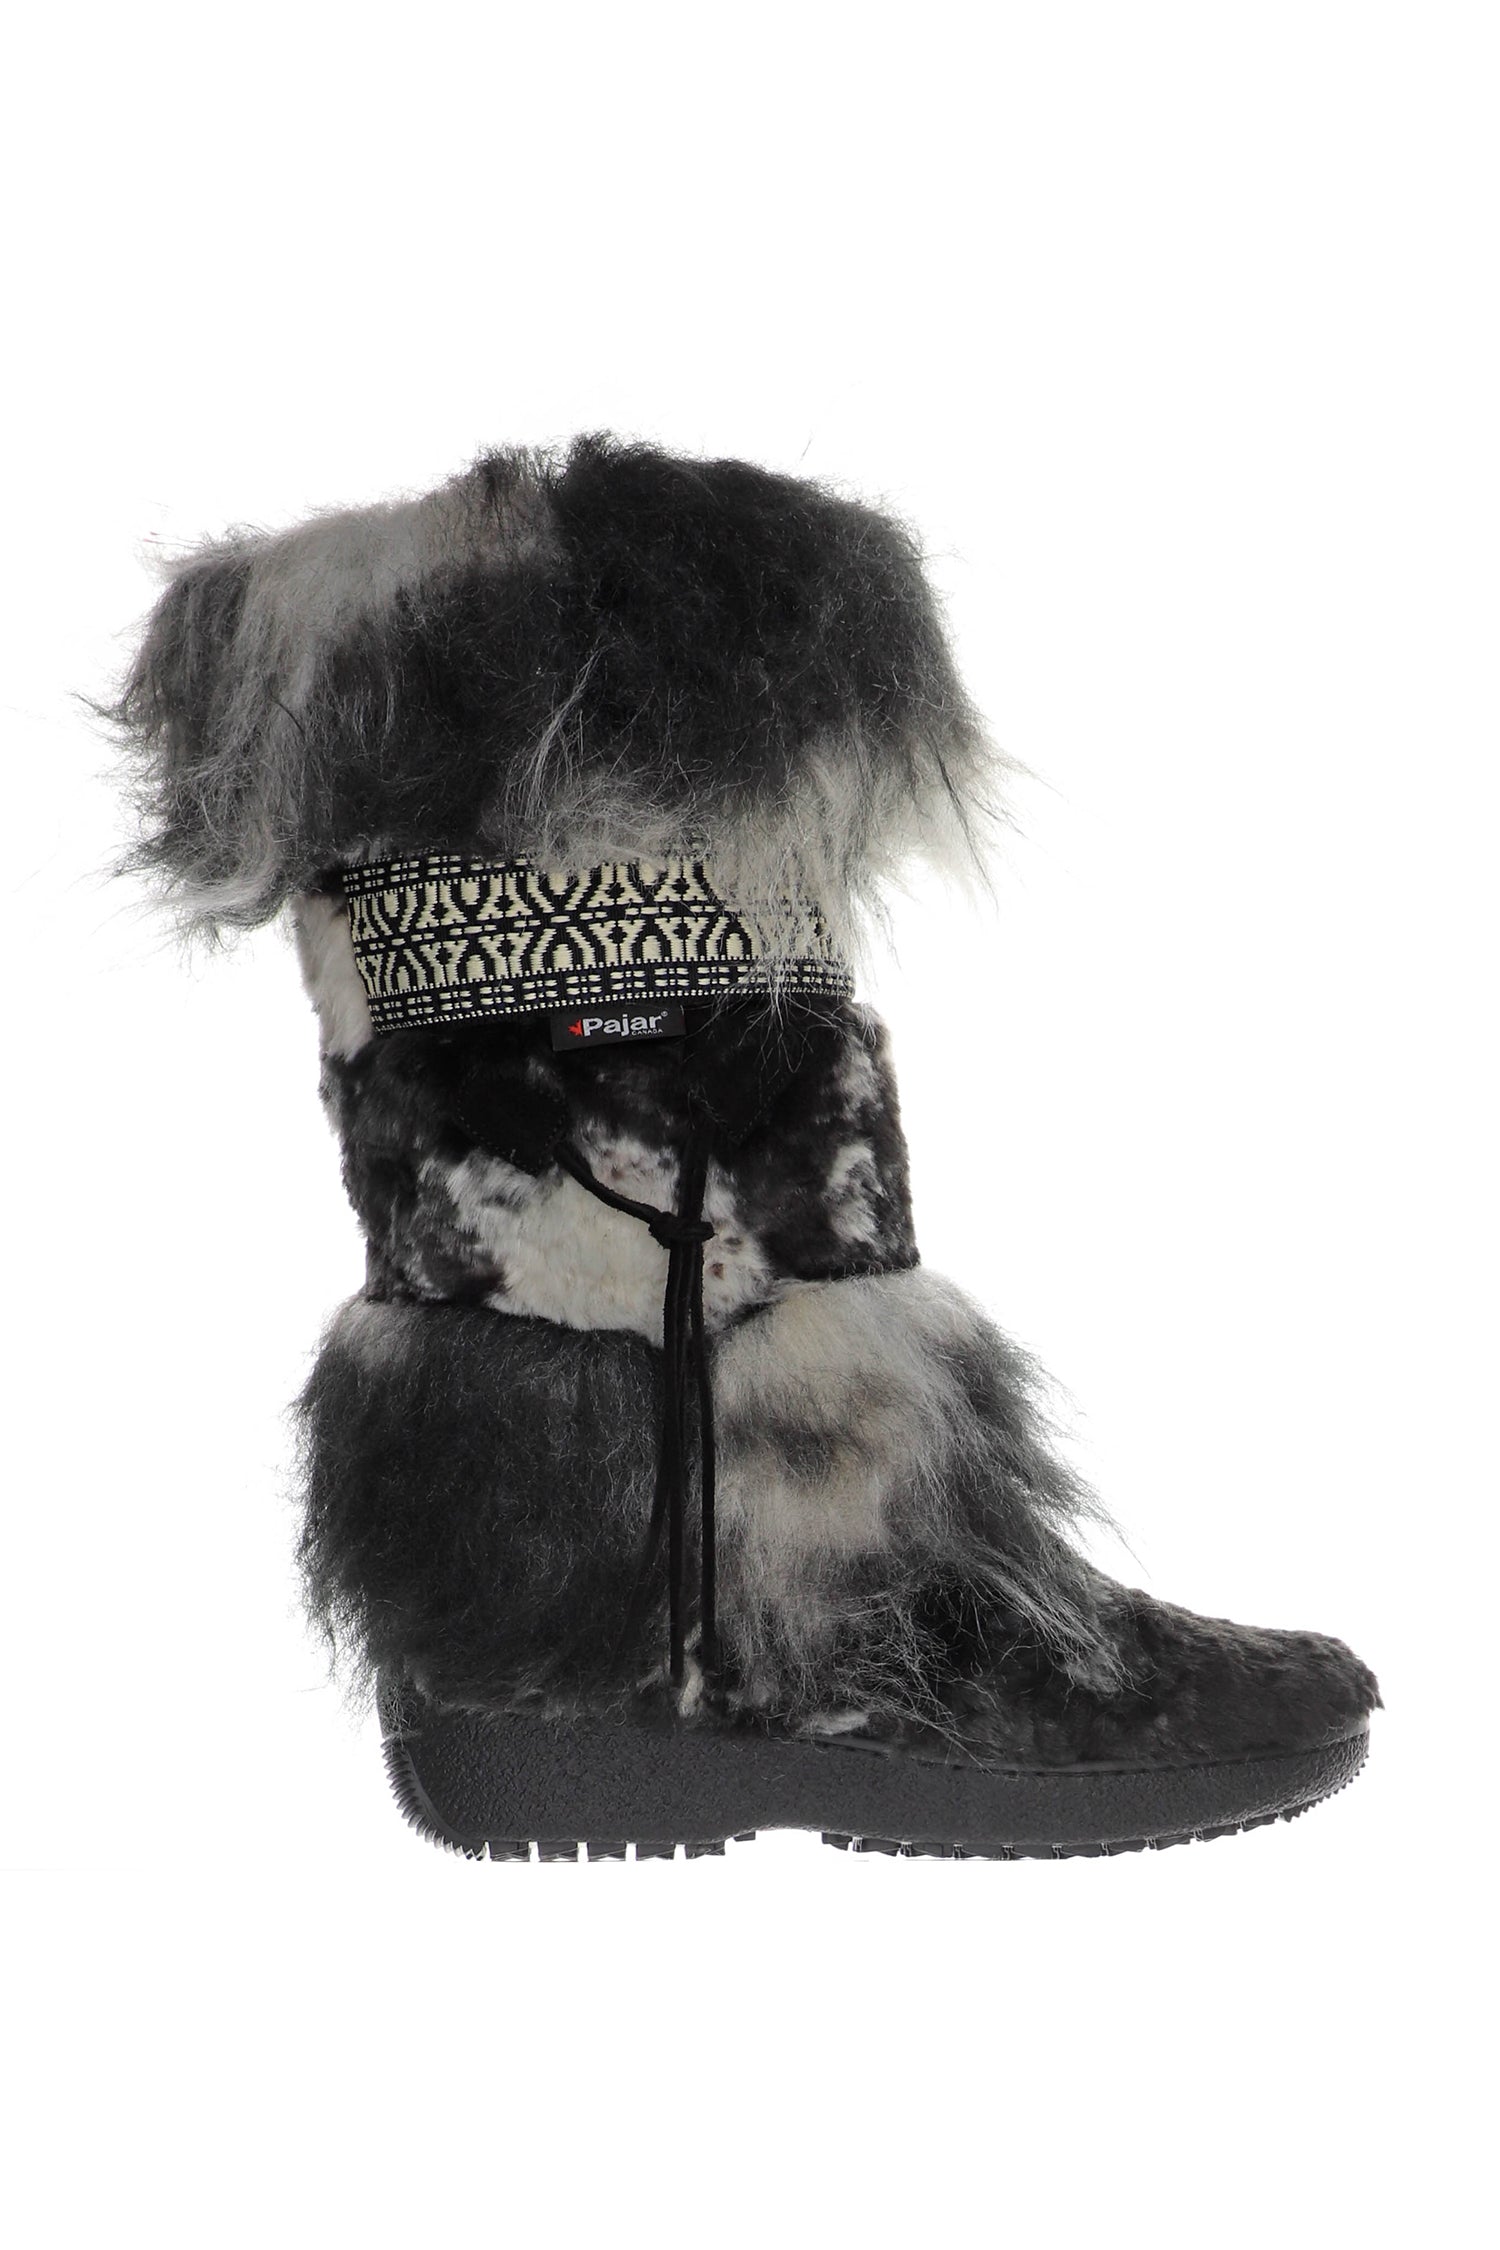 Anna Sui x Pajar Folklore Boot<br> Black & White - Anna Sui